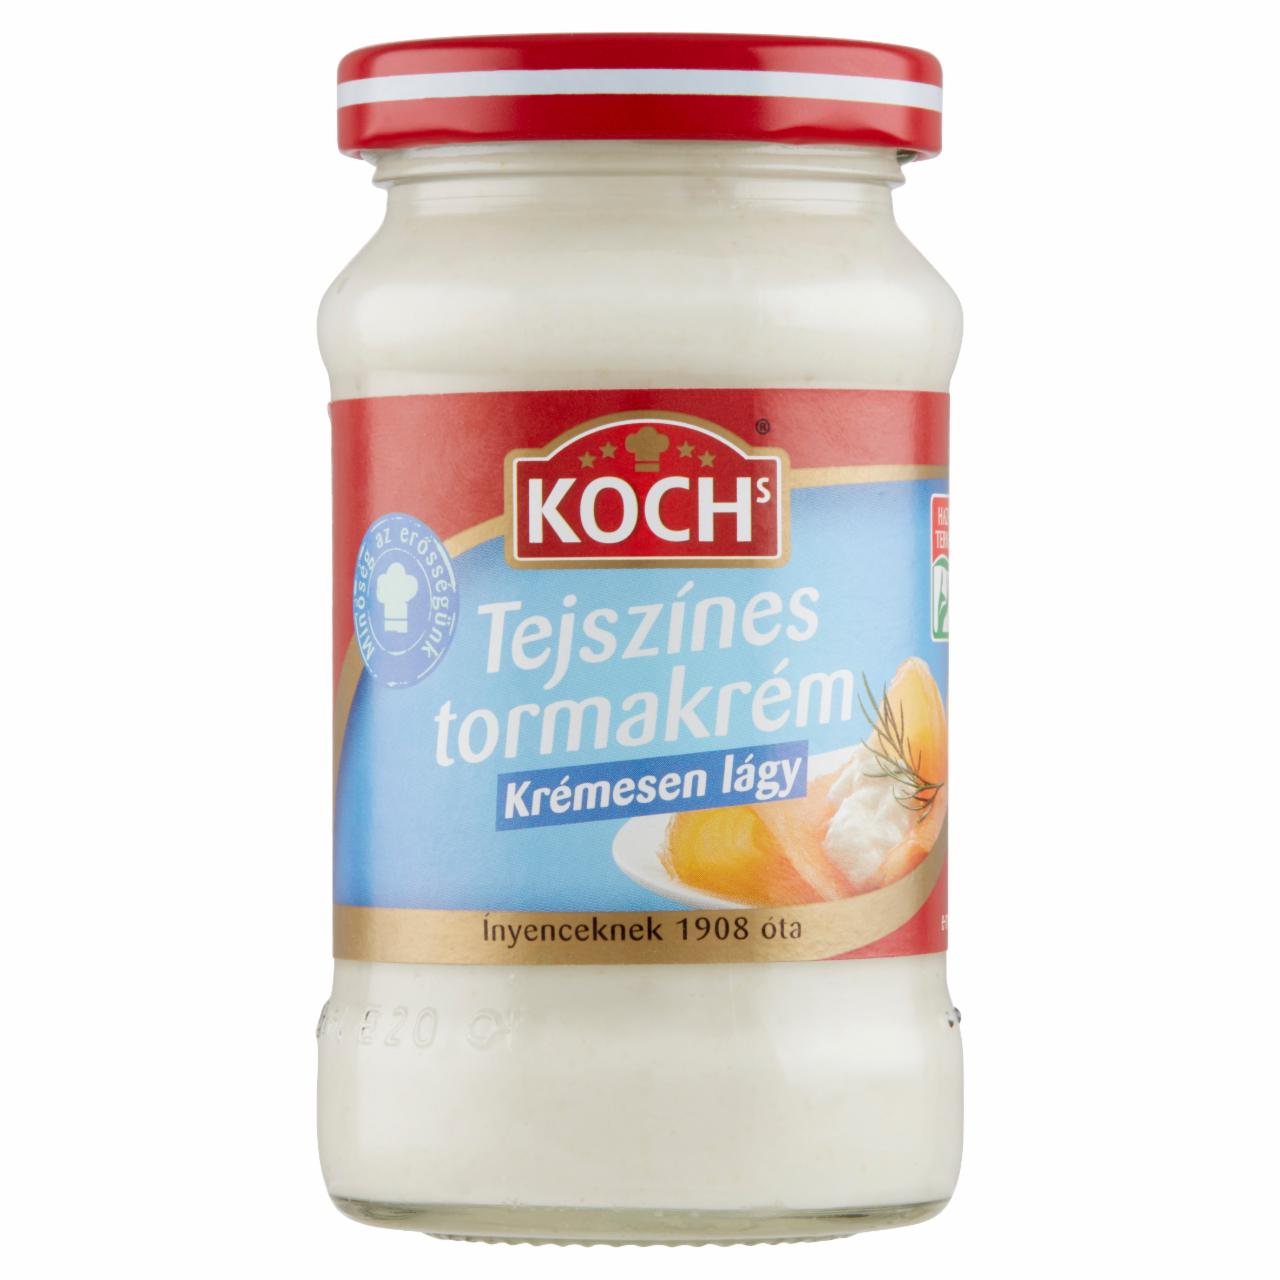 Képek - Koch's tejszínes tormakrém 190 g